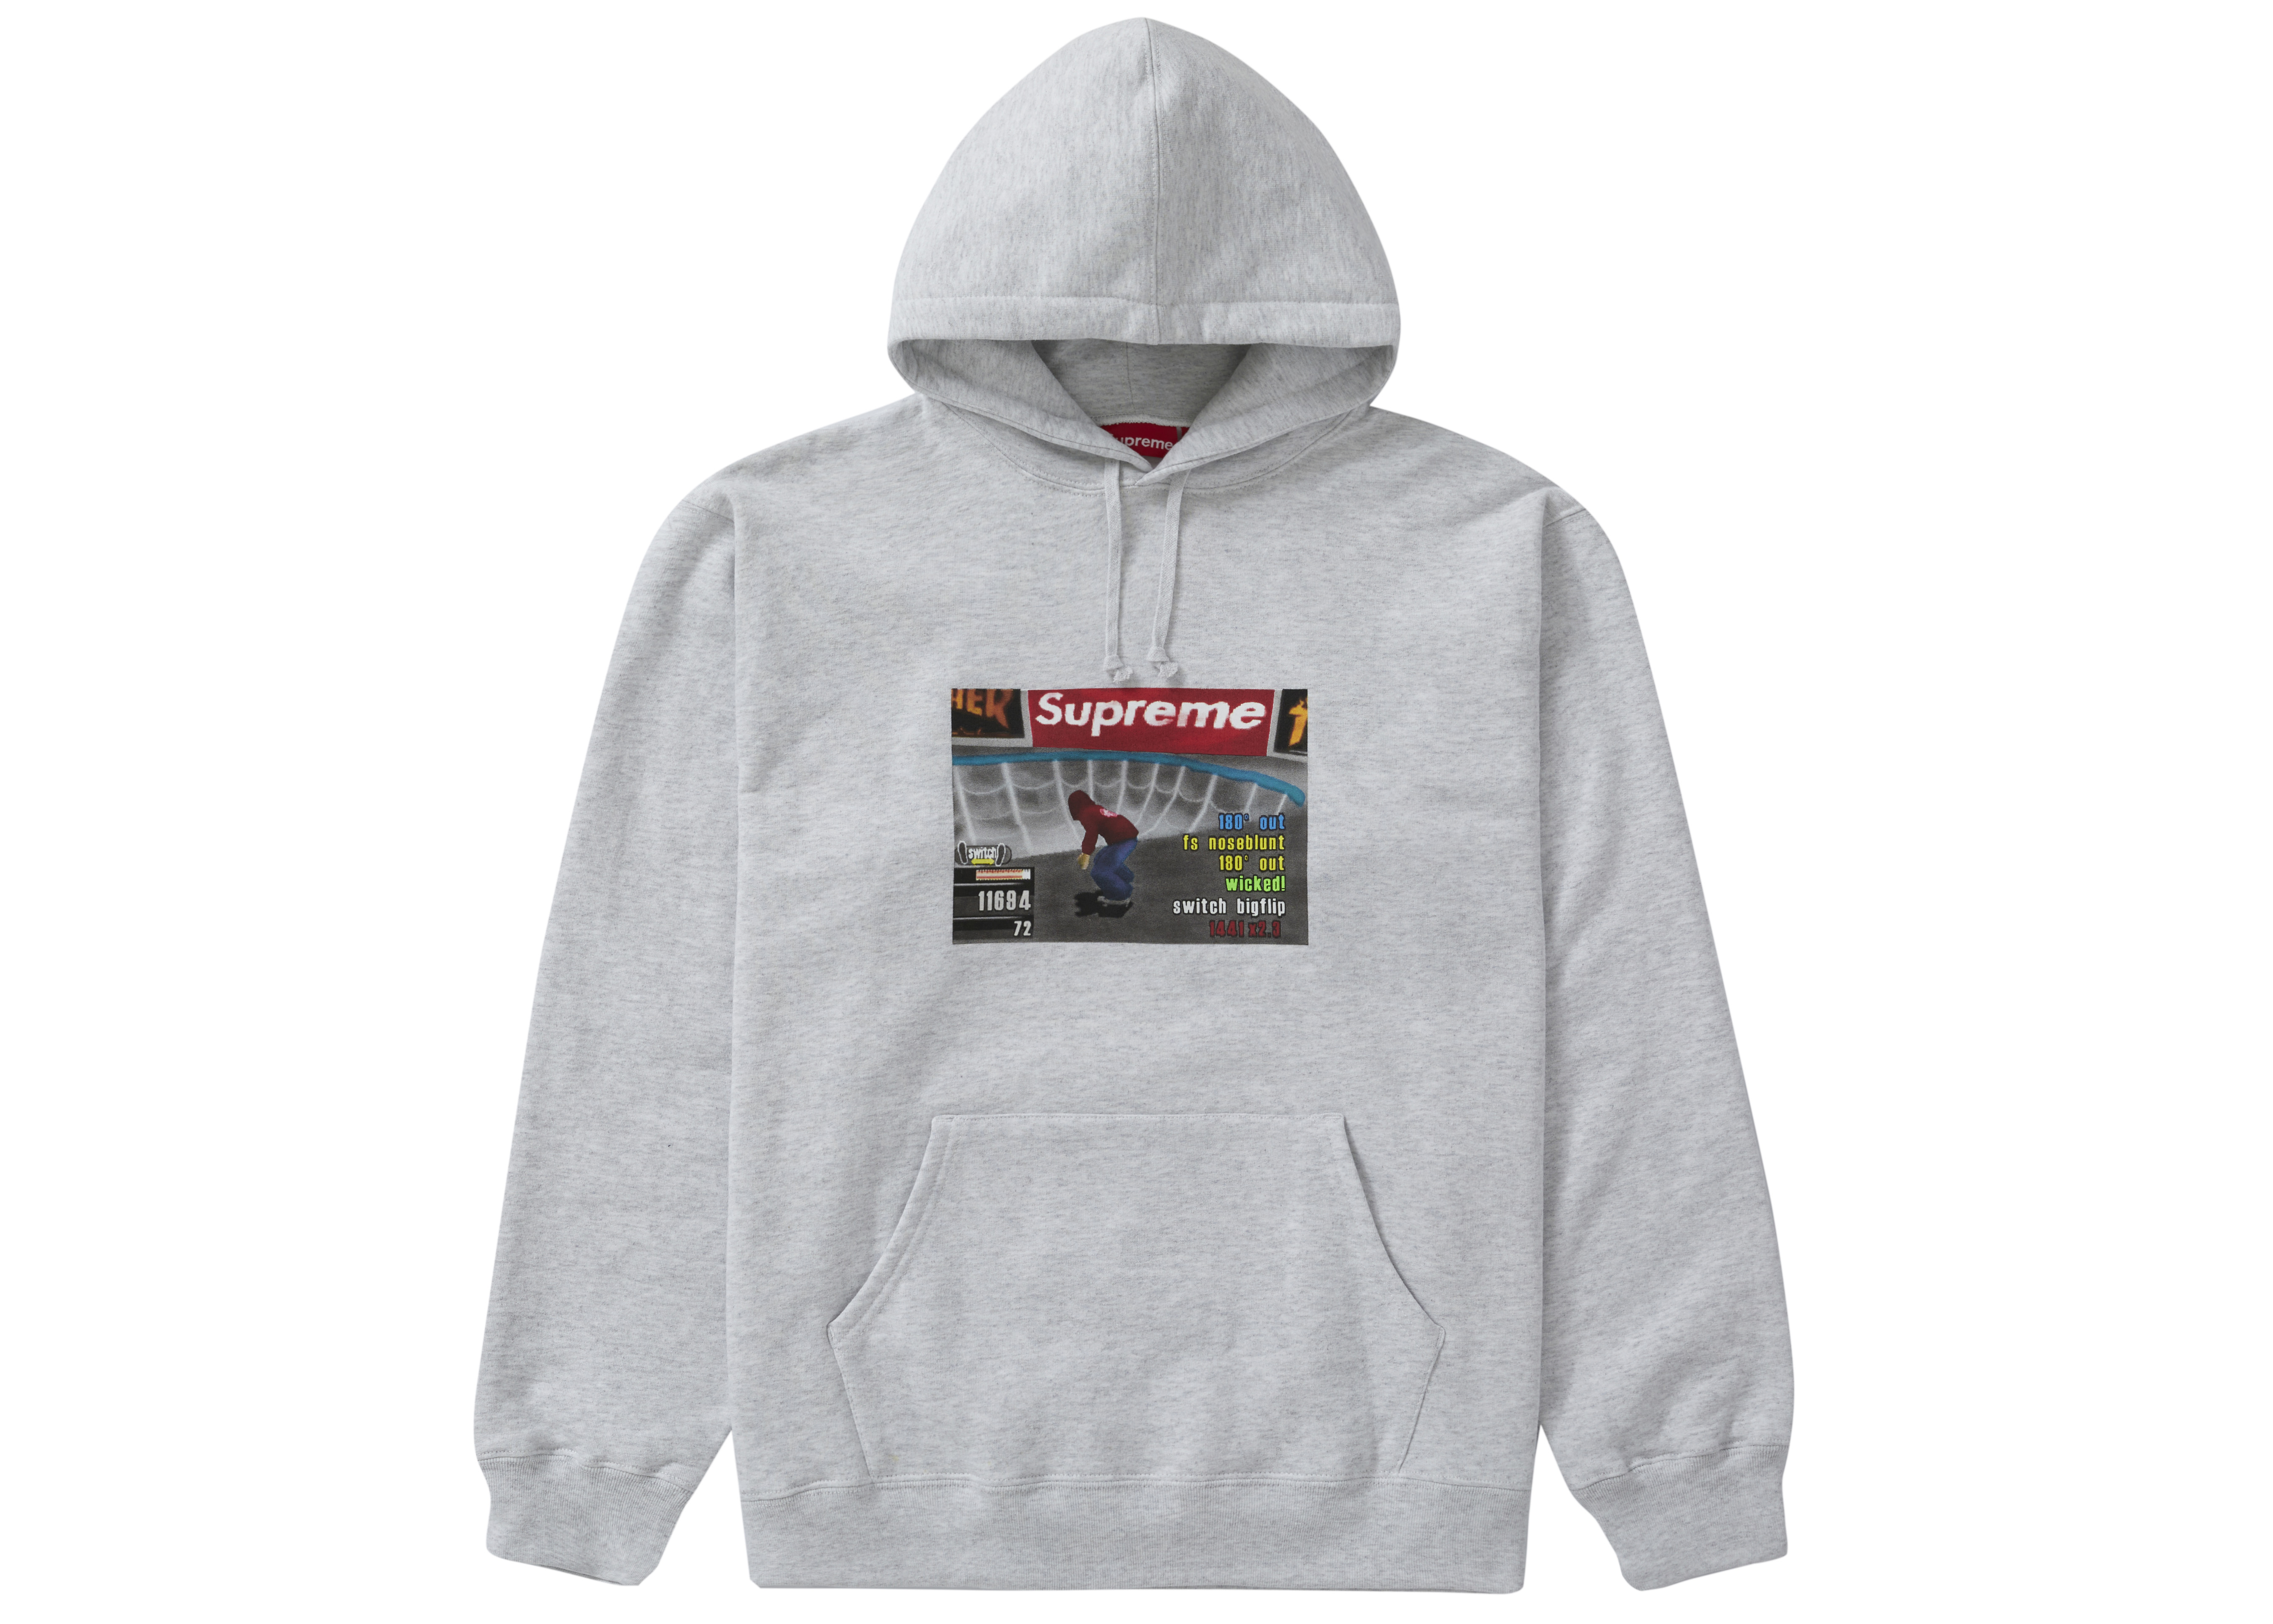 Supreme/Thrasher® hooded sweatshirt